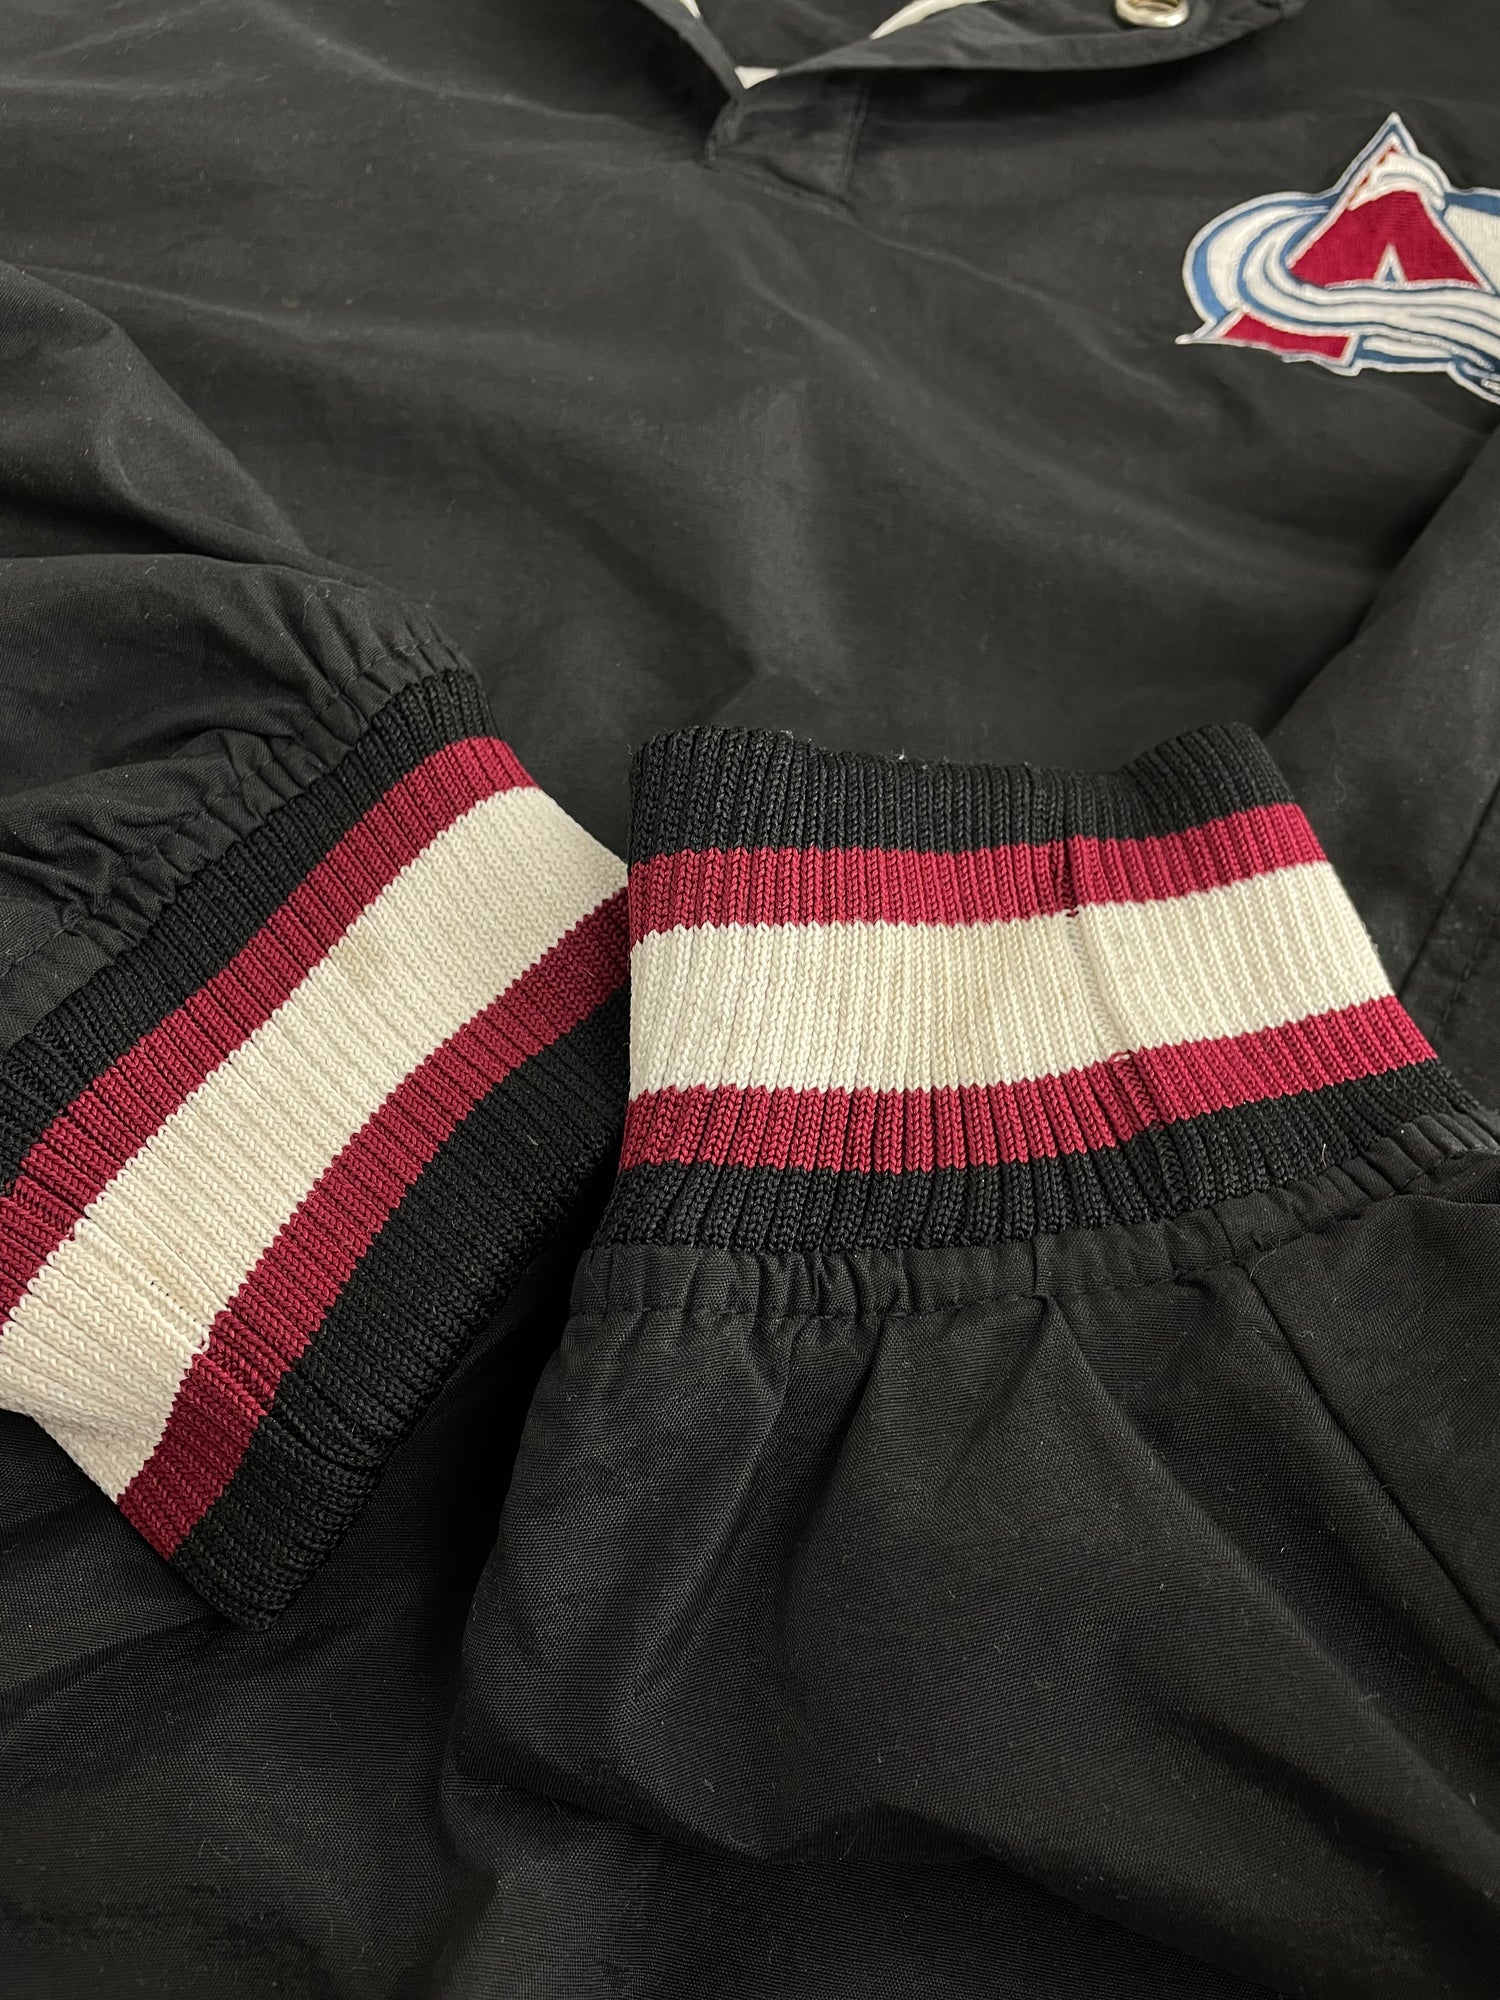 Vintage 1990's Colorado Avalanche NHL Fleece - Depop